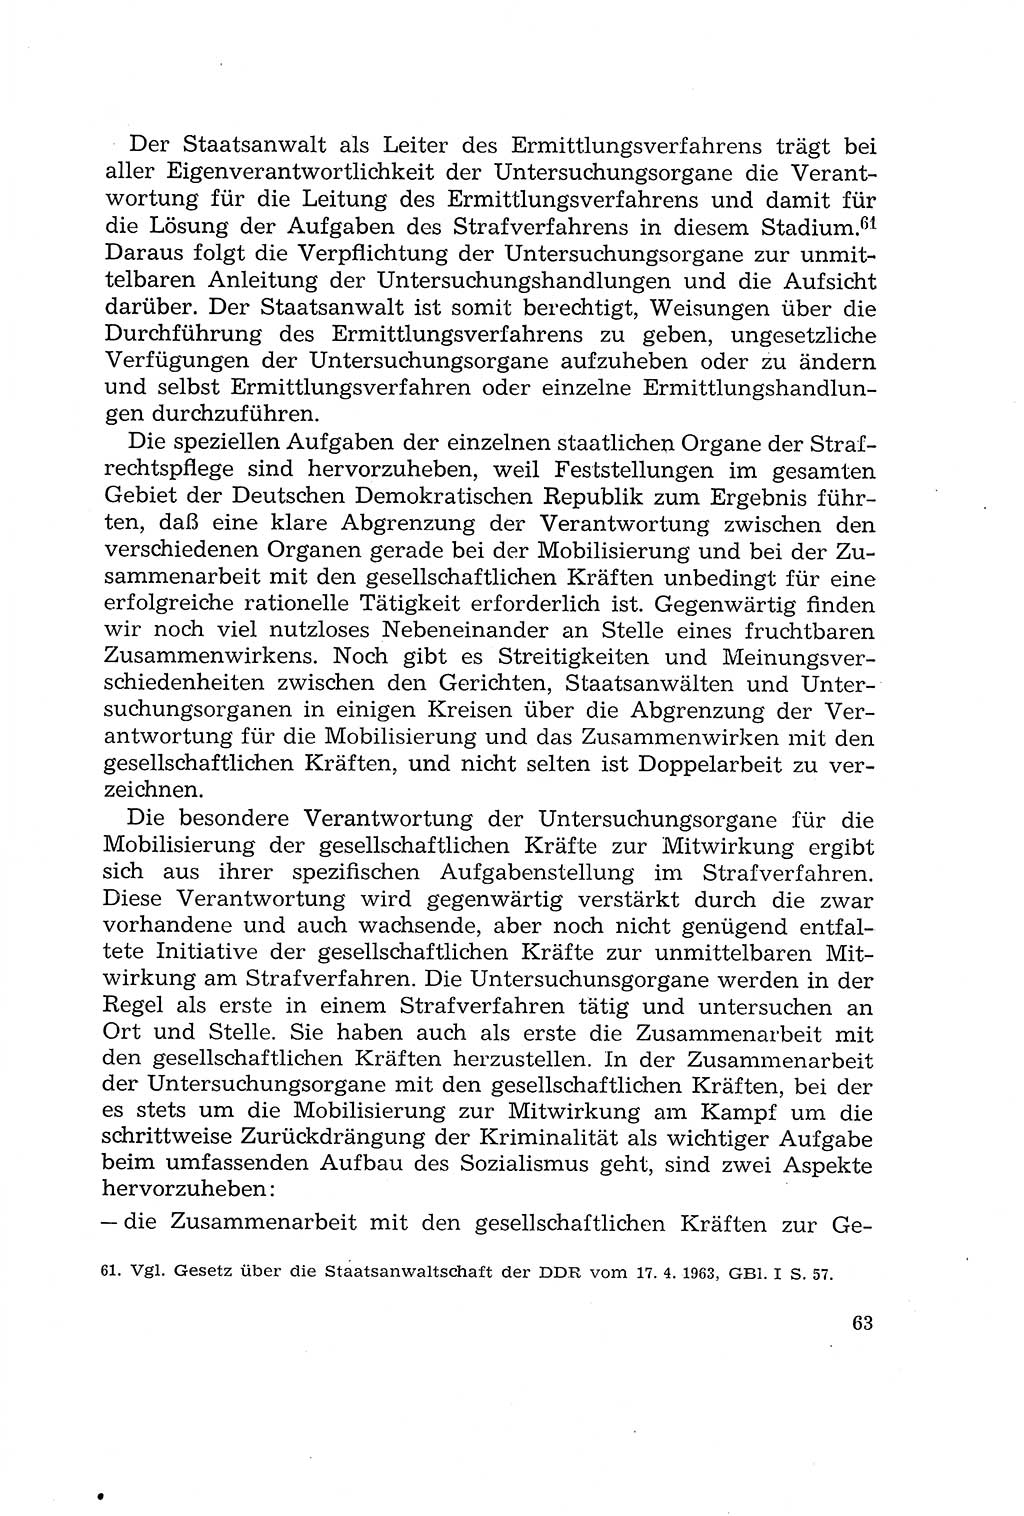 Die Mitwirkung der Werktätigen am Strafverfahren [Deutsche Demokratische Republik (DDR)] 1966, Seite 63 (Mitw. Str.-Verf. DDR 1966, S. 63)